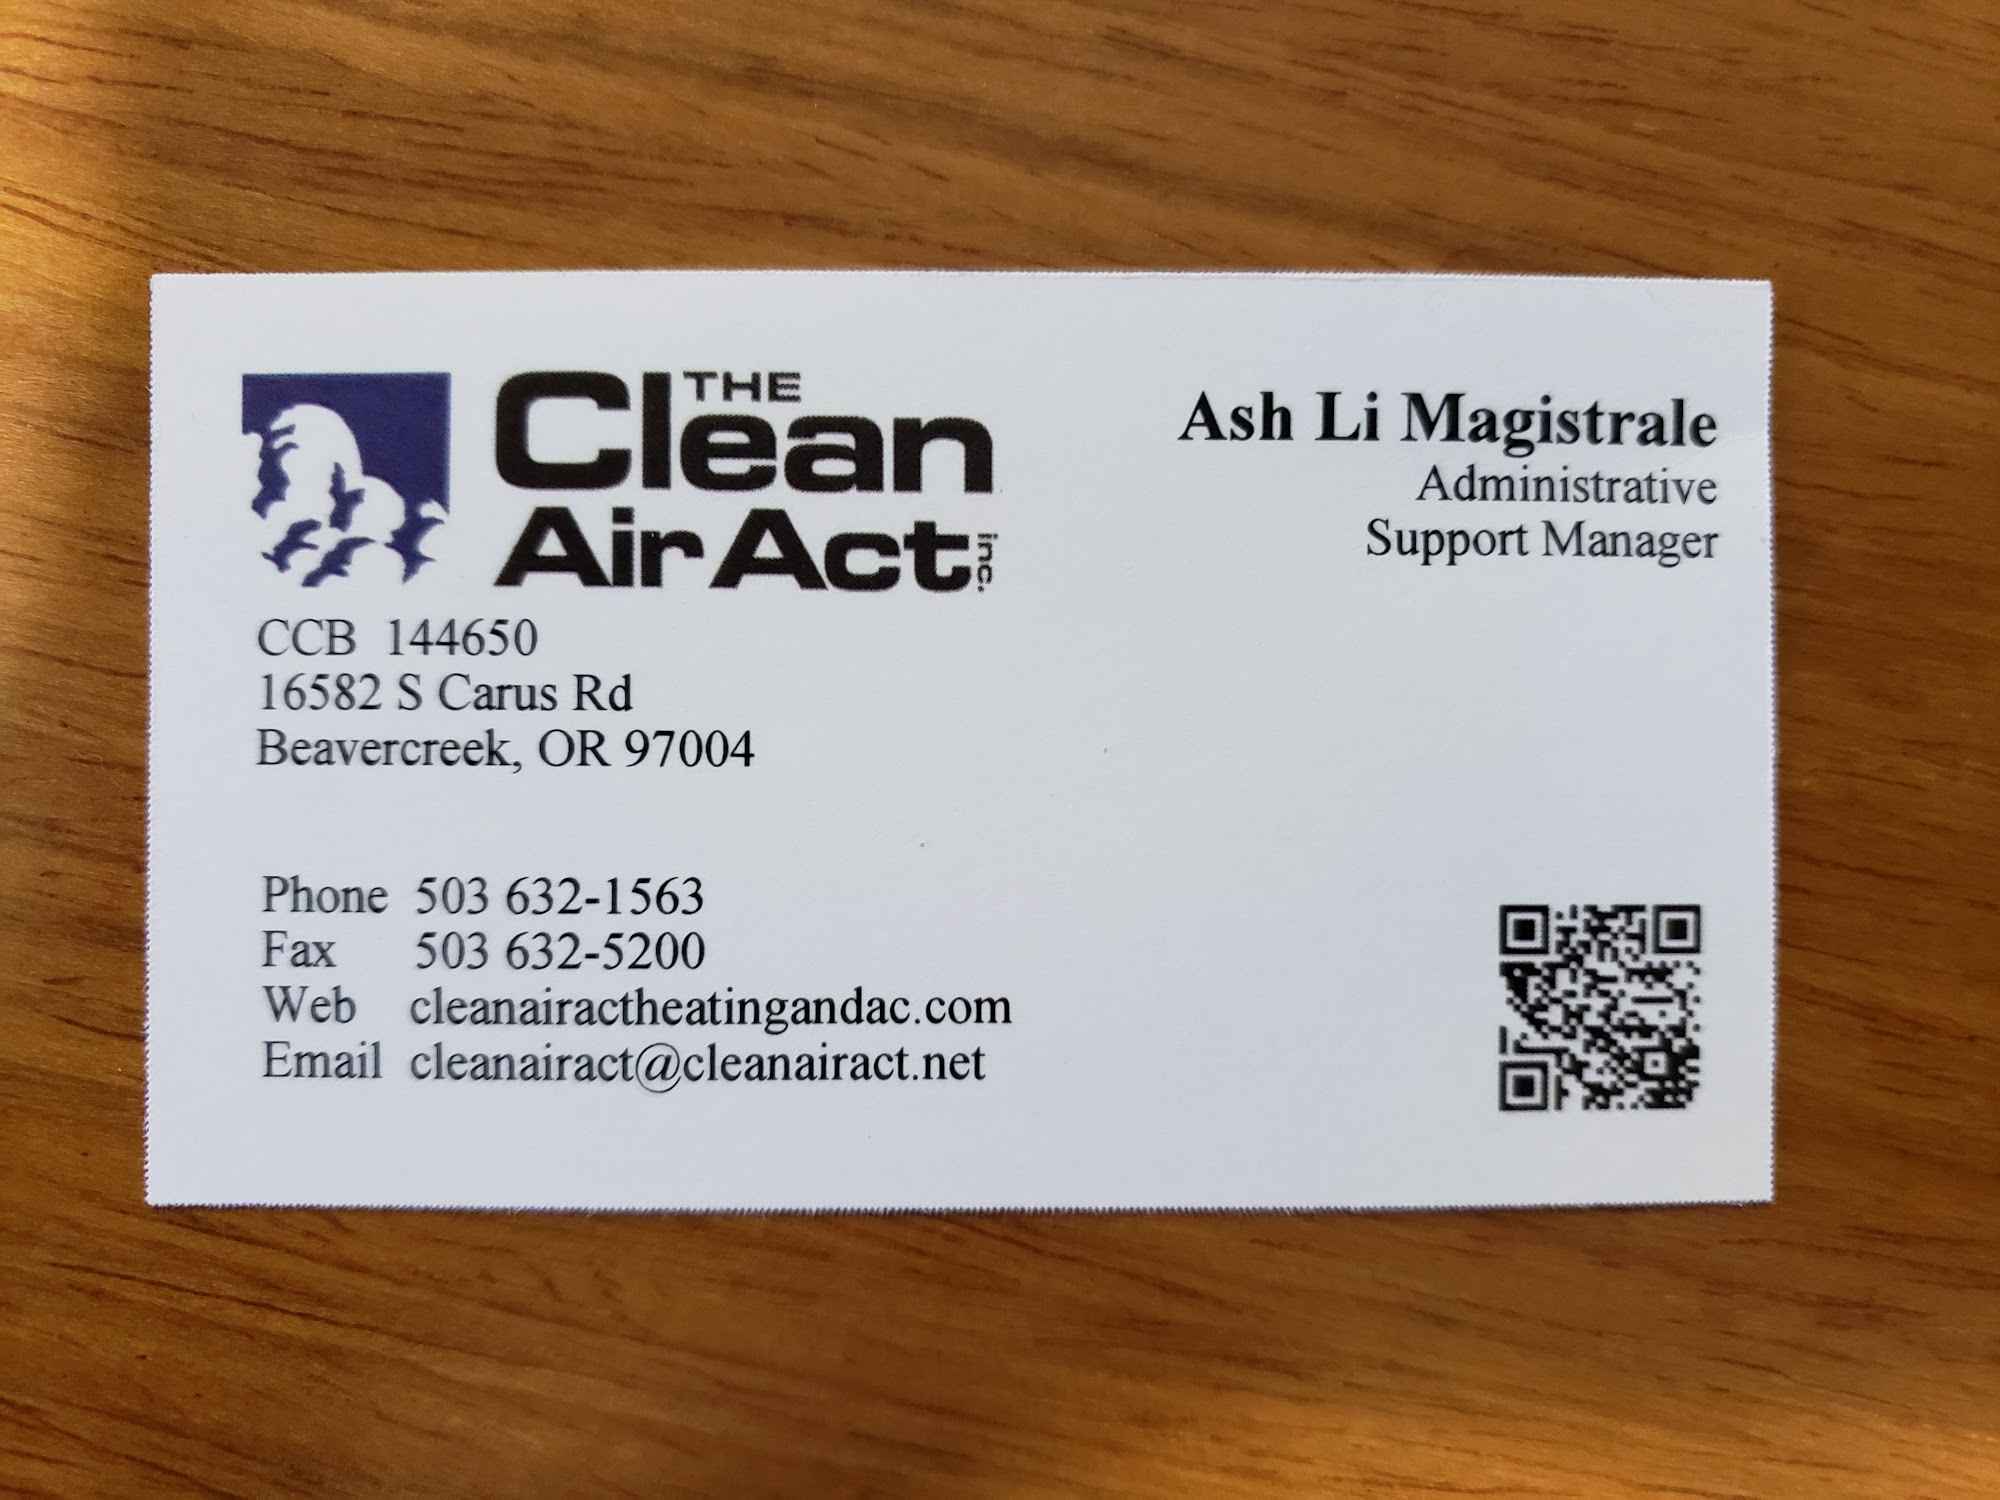 The Clean Air Act, Inc. 16582 S Carus Rd, Beavercreek Oregon 97004